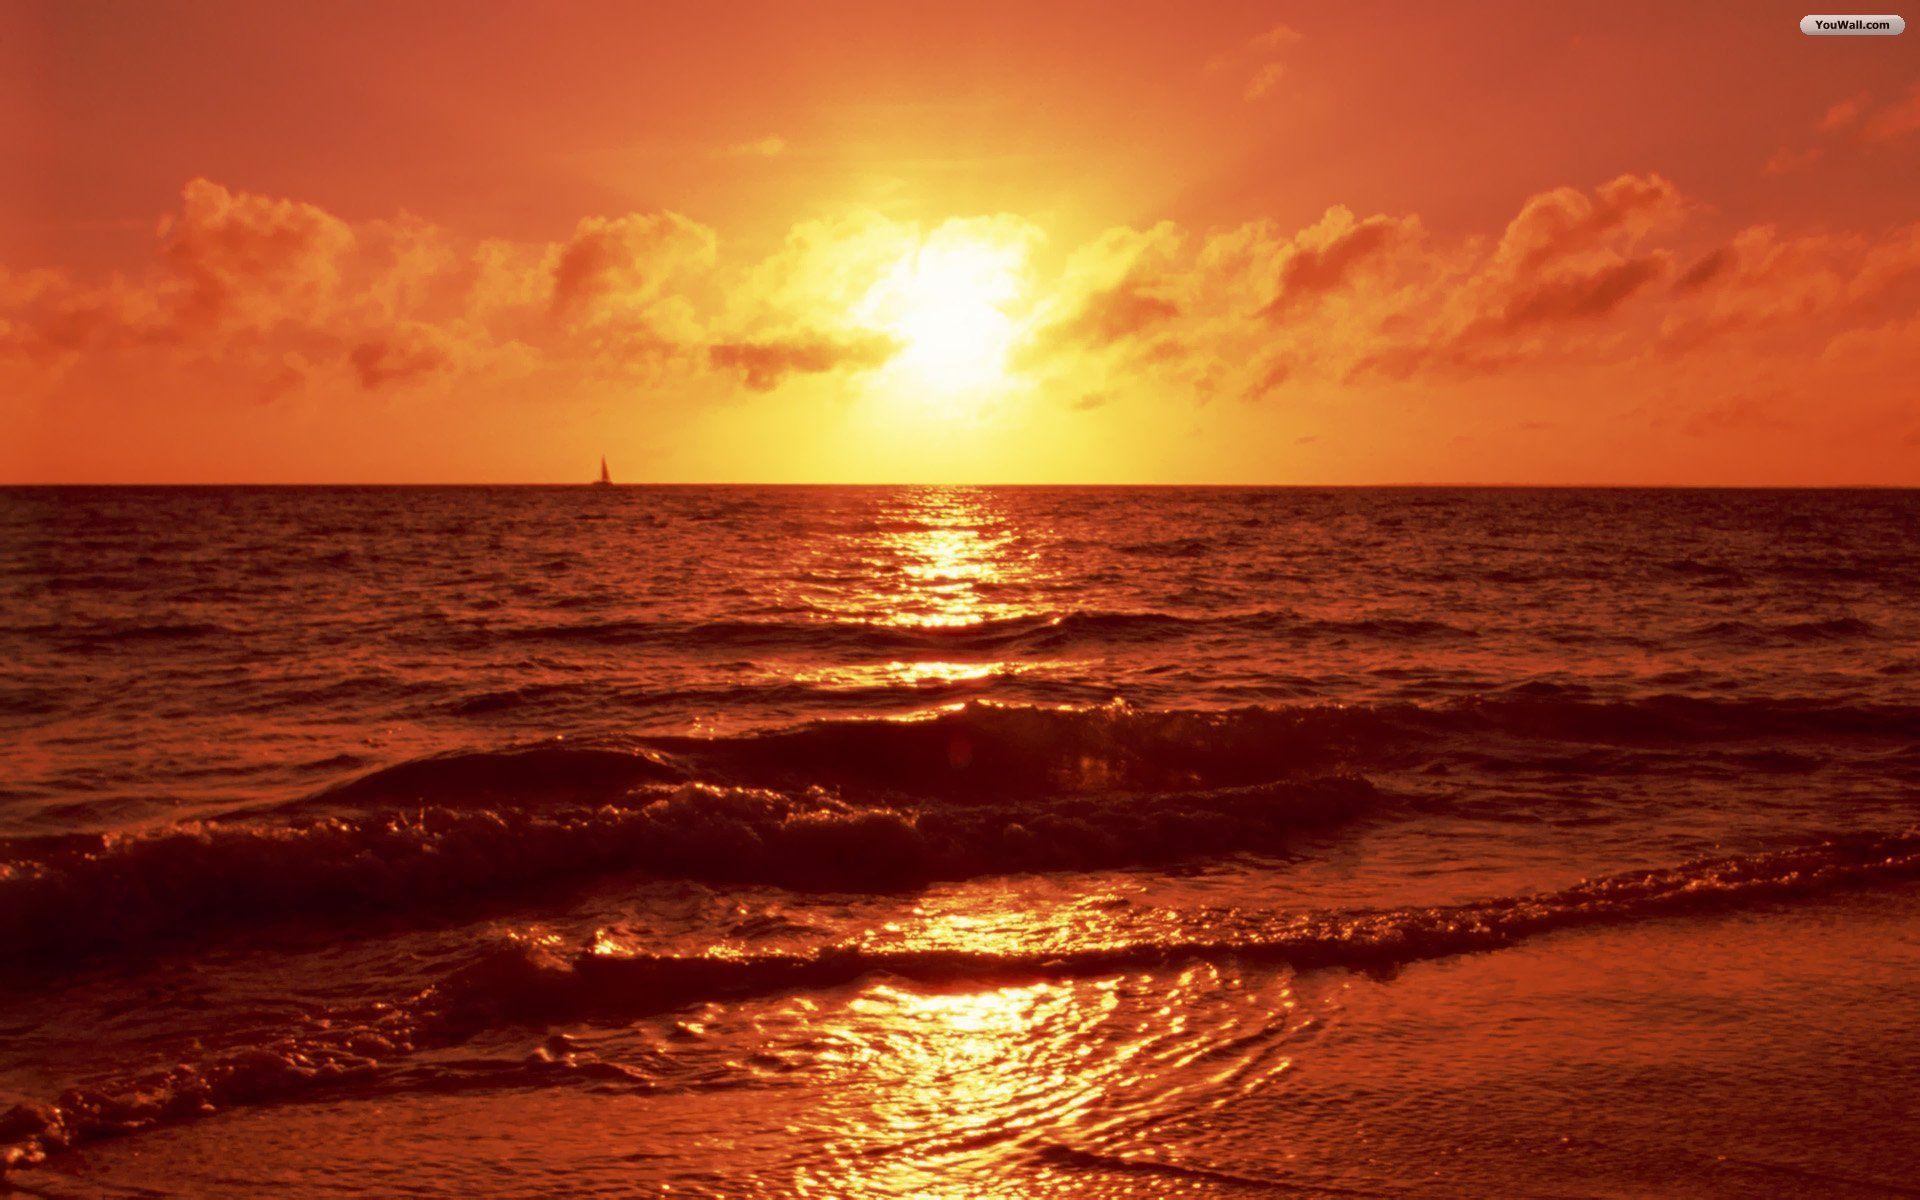 Wallpaper For > HD Beach Sunset Wallpaper For Mac